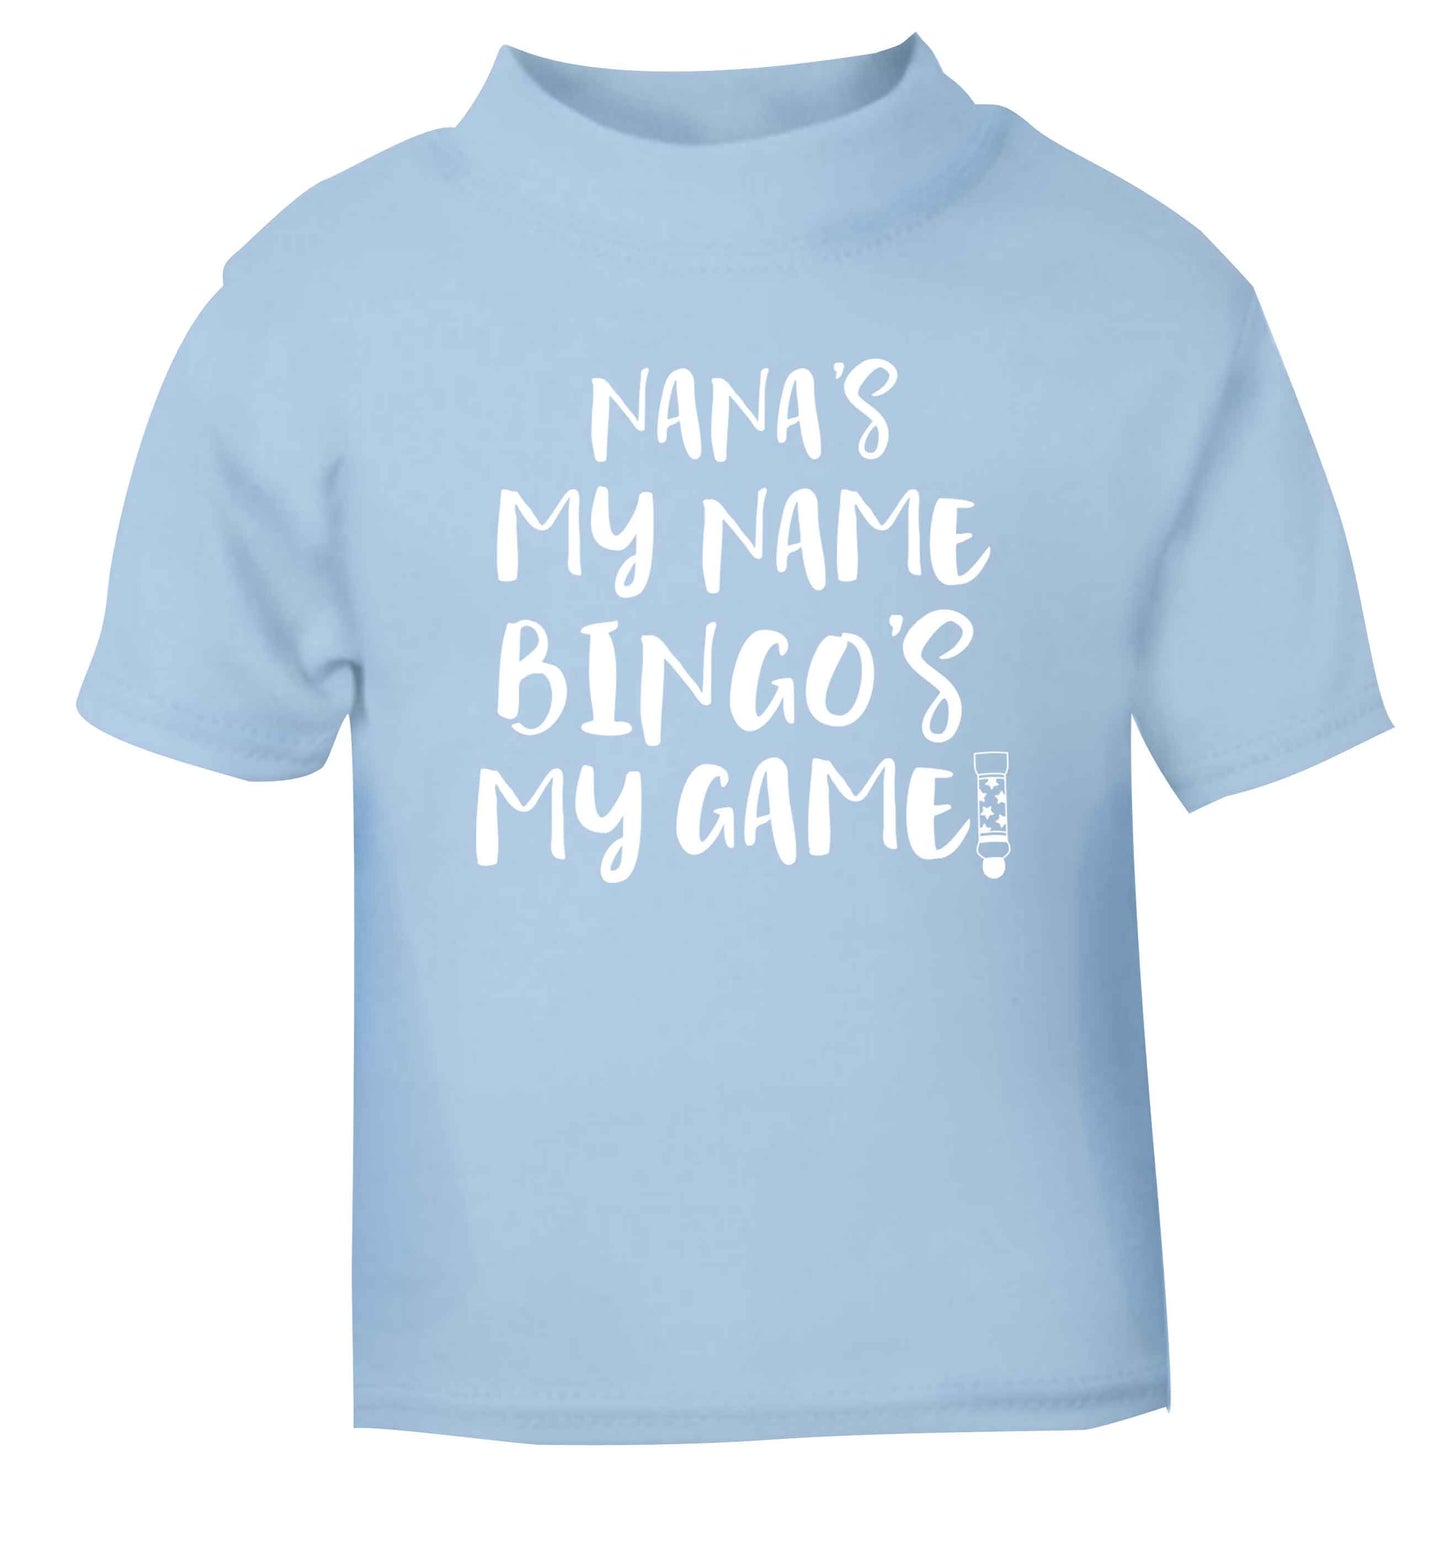 Nana's my name bingo's my game! light blue Baby Toddler Tshirt 2 Years